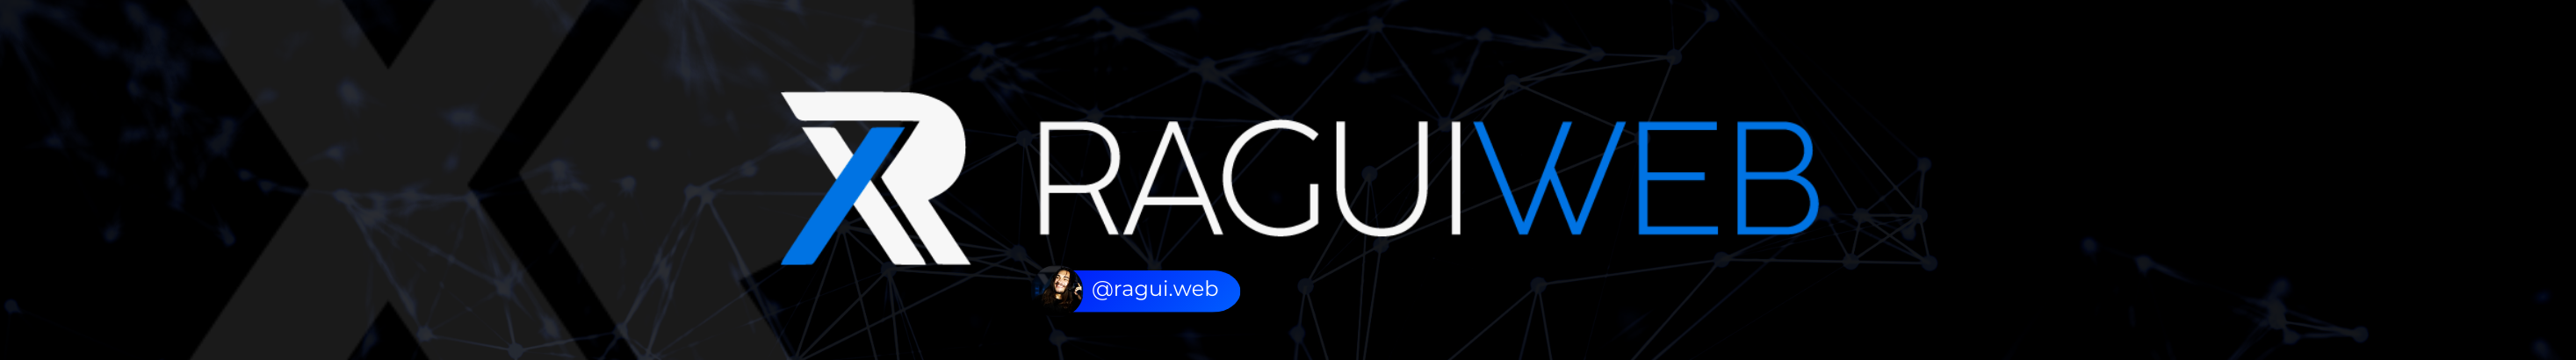 Ragui Web's profile banner